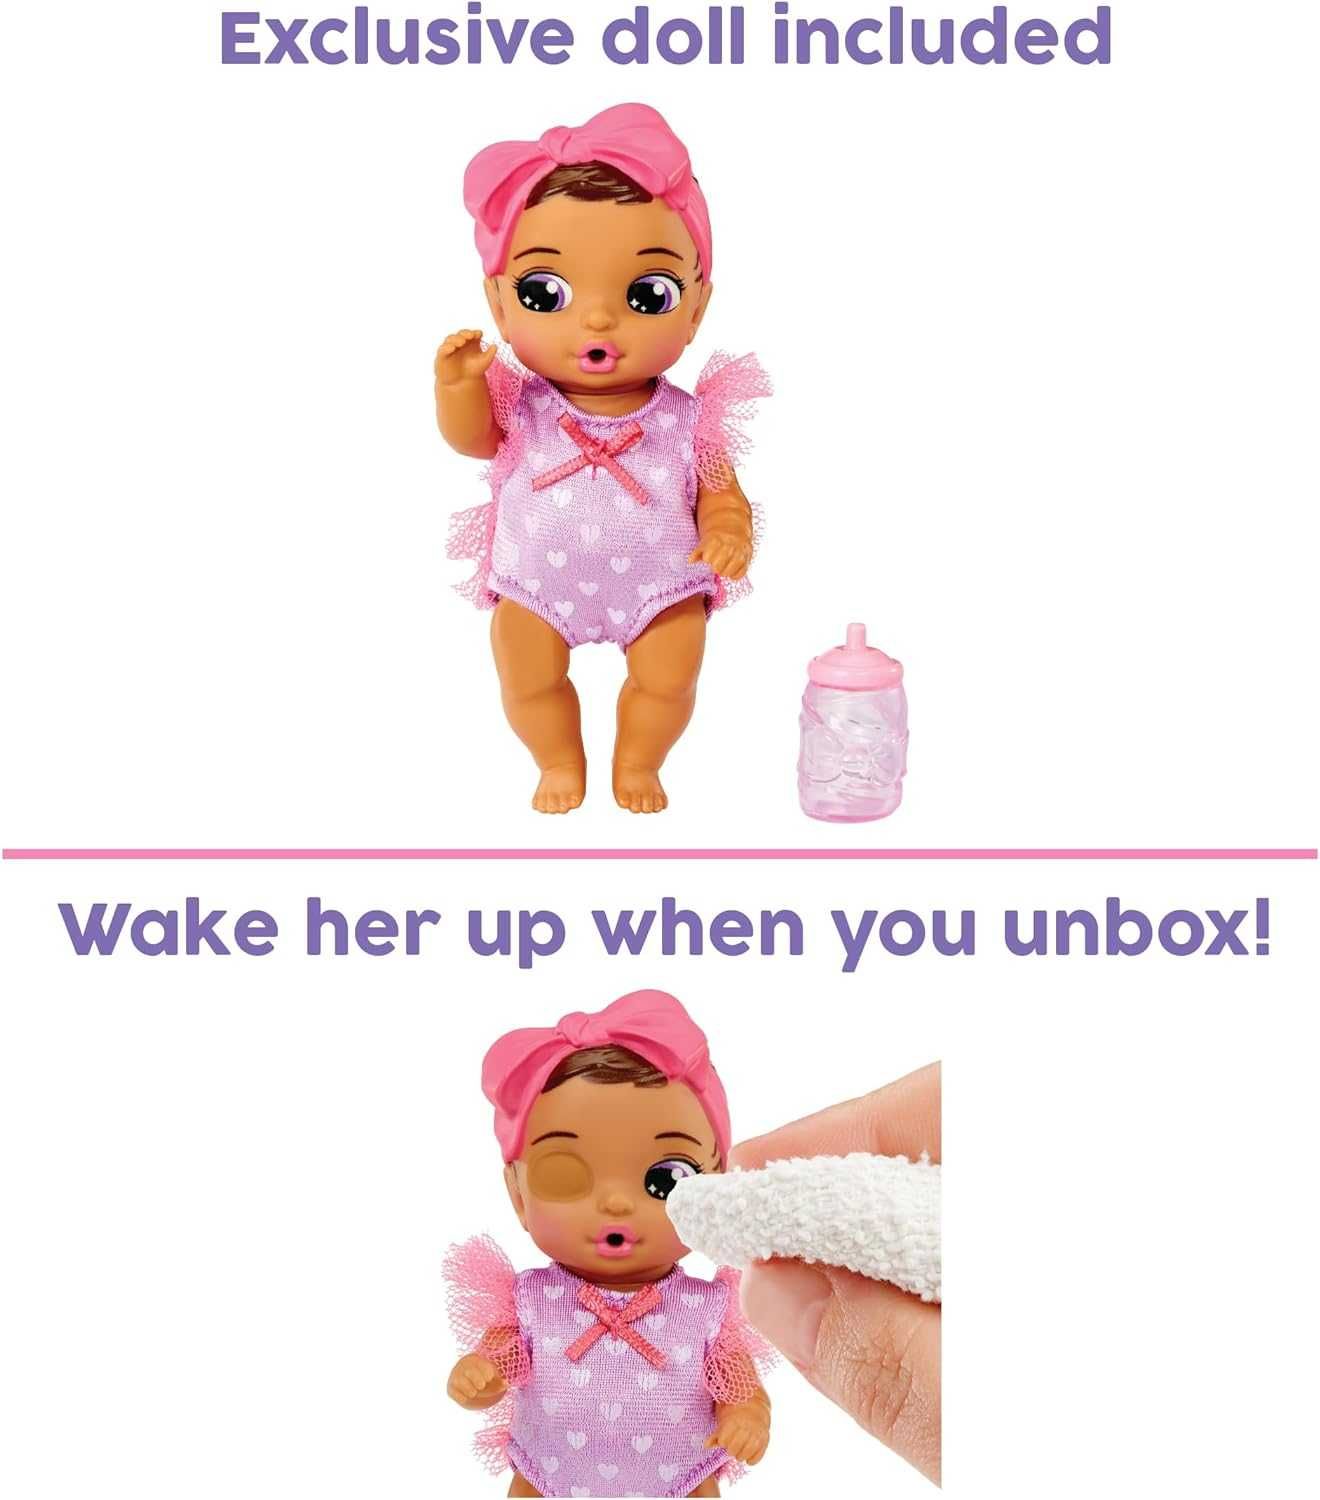 Домик бутылочка Беби Борн Baby Born Bottle House with Exclusive Doll